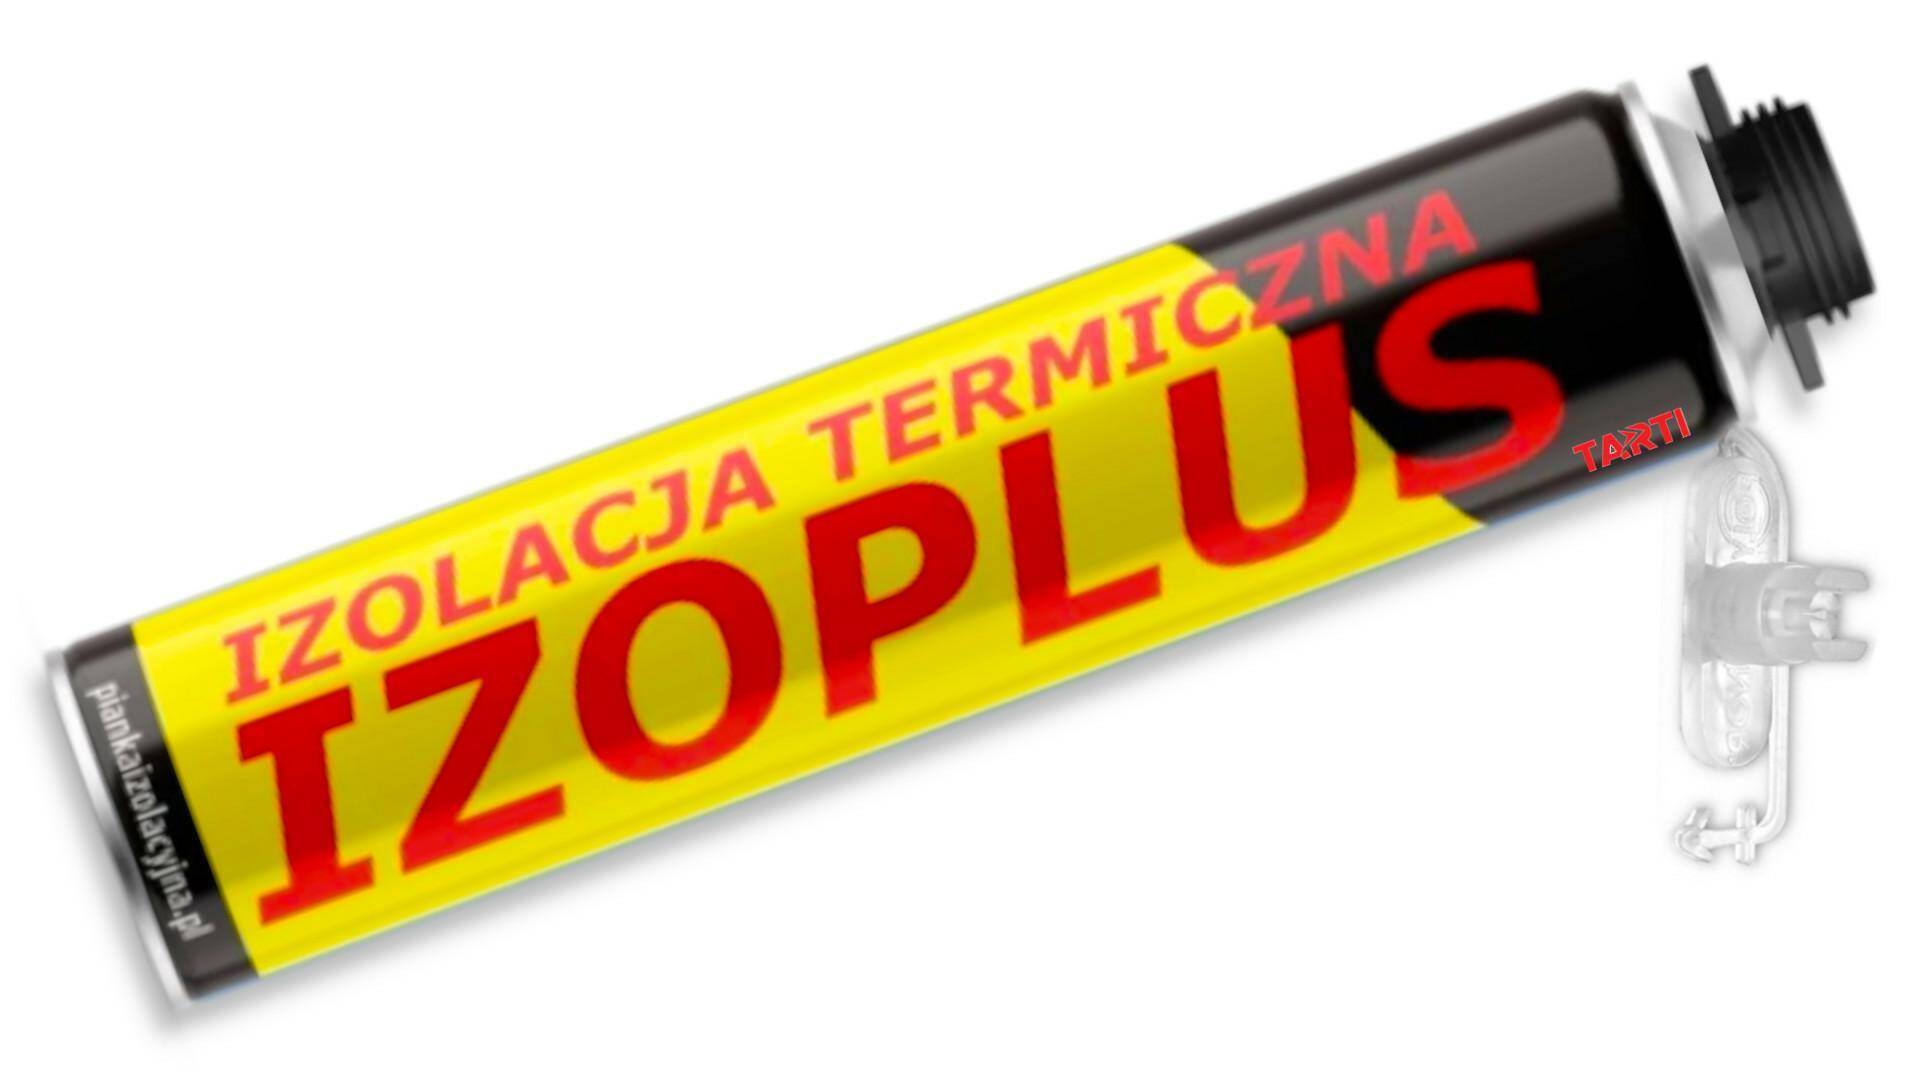 IZOPLUS izolacja poliuretanowa